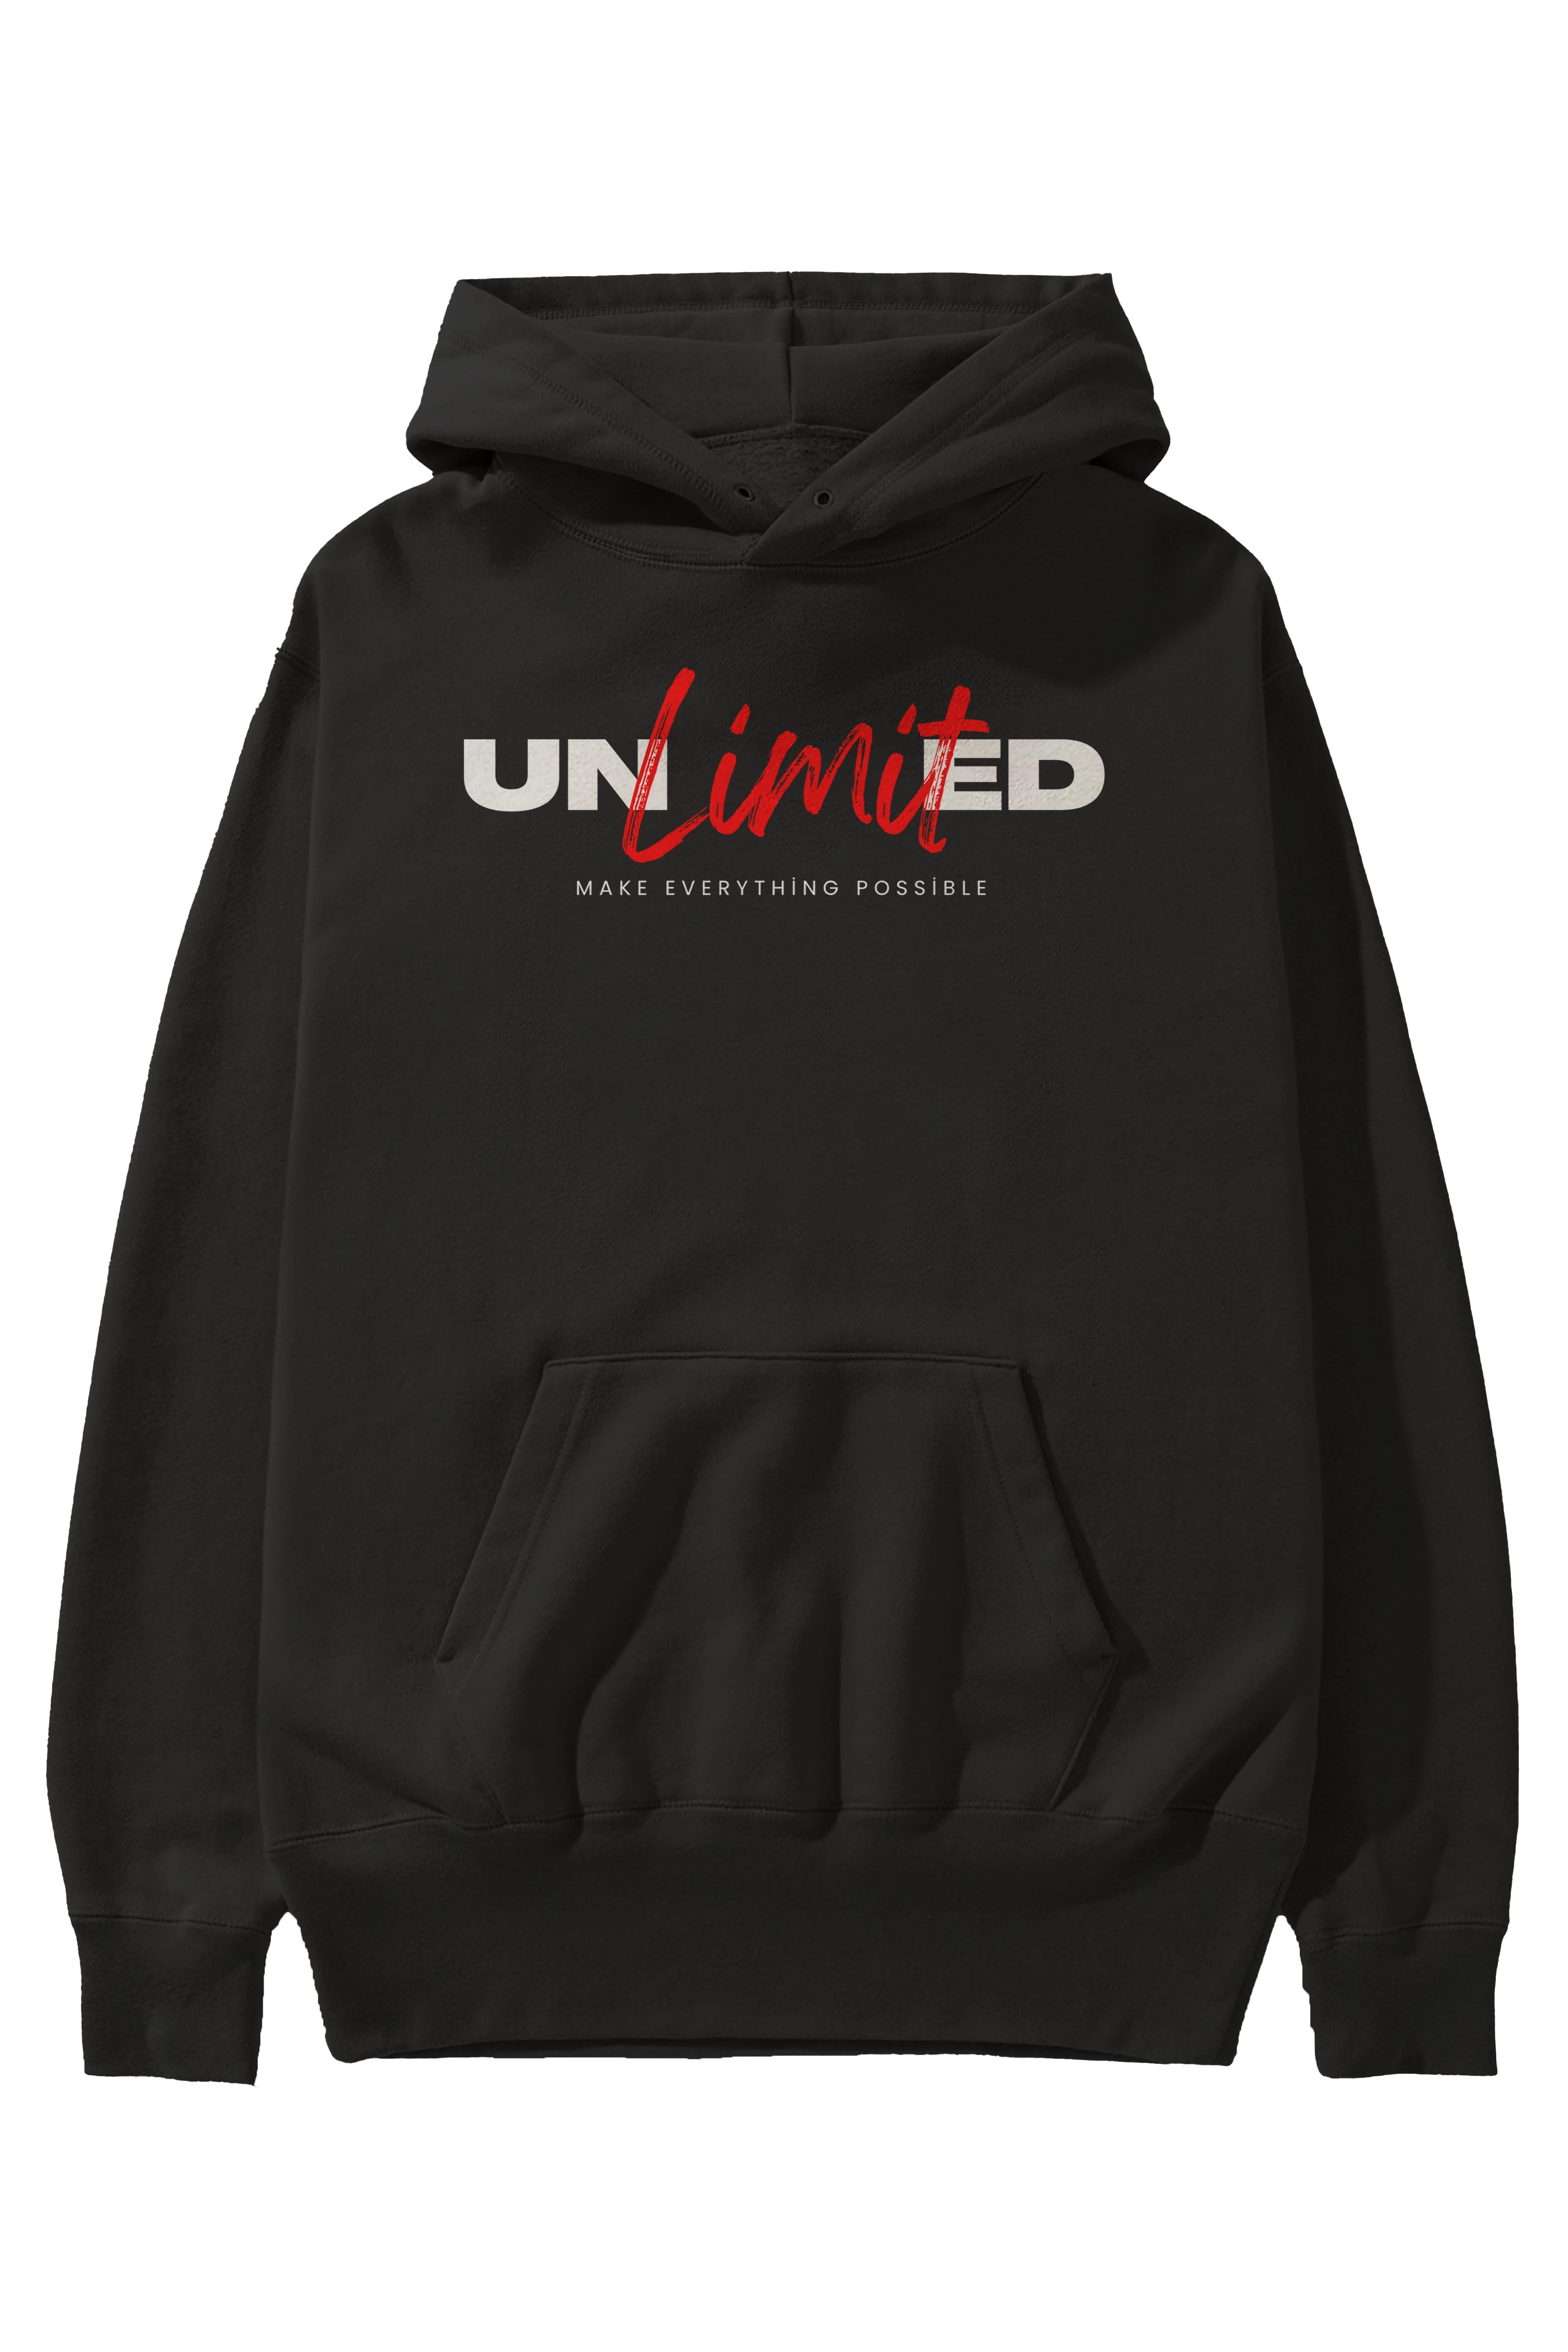 Unlimited Yazılı Ön Baskılı Oversize Hoodie Kapüşonlu Sweatshirt Erkek Kadın Unisex